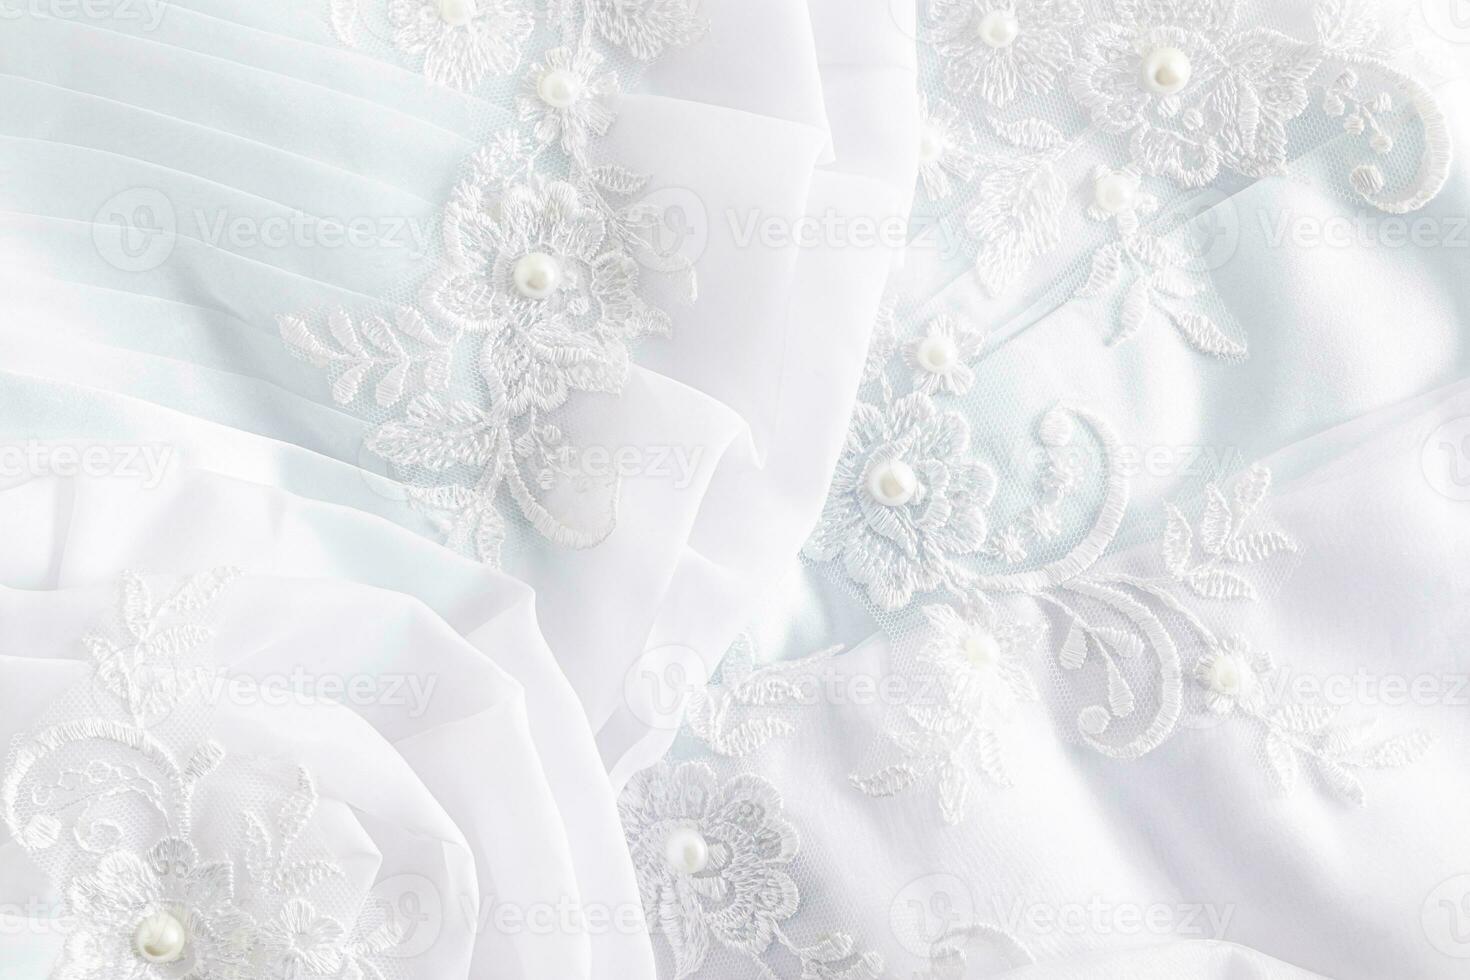 el tela detalles de el de la novia vestido, el hermosa bordado y pañería. blanco aireado pliegues de seda tela. bordado con perlas foto